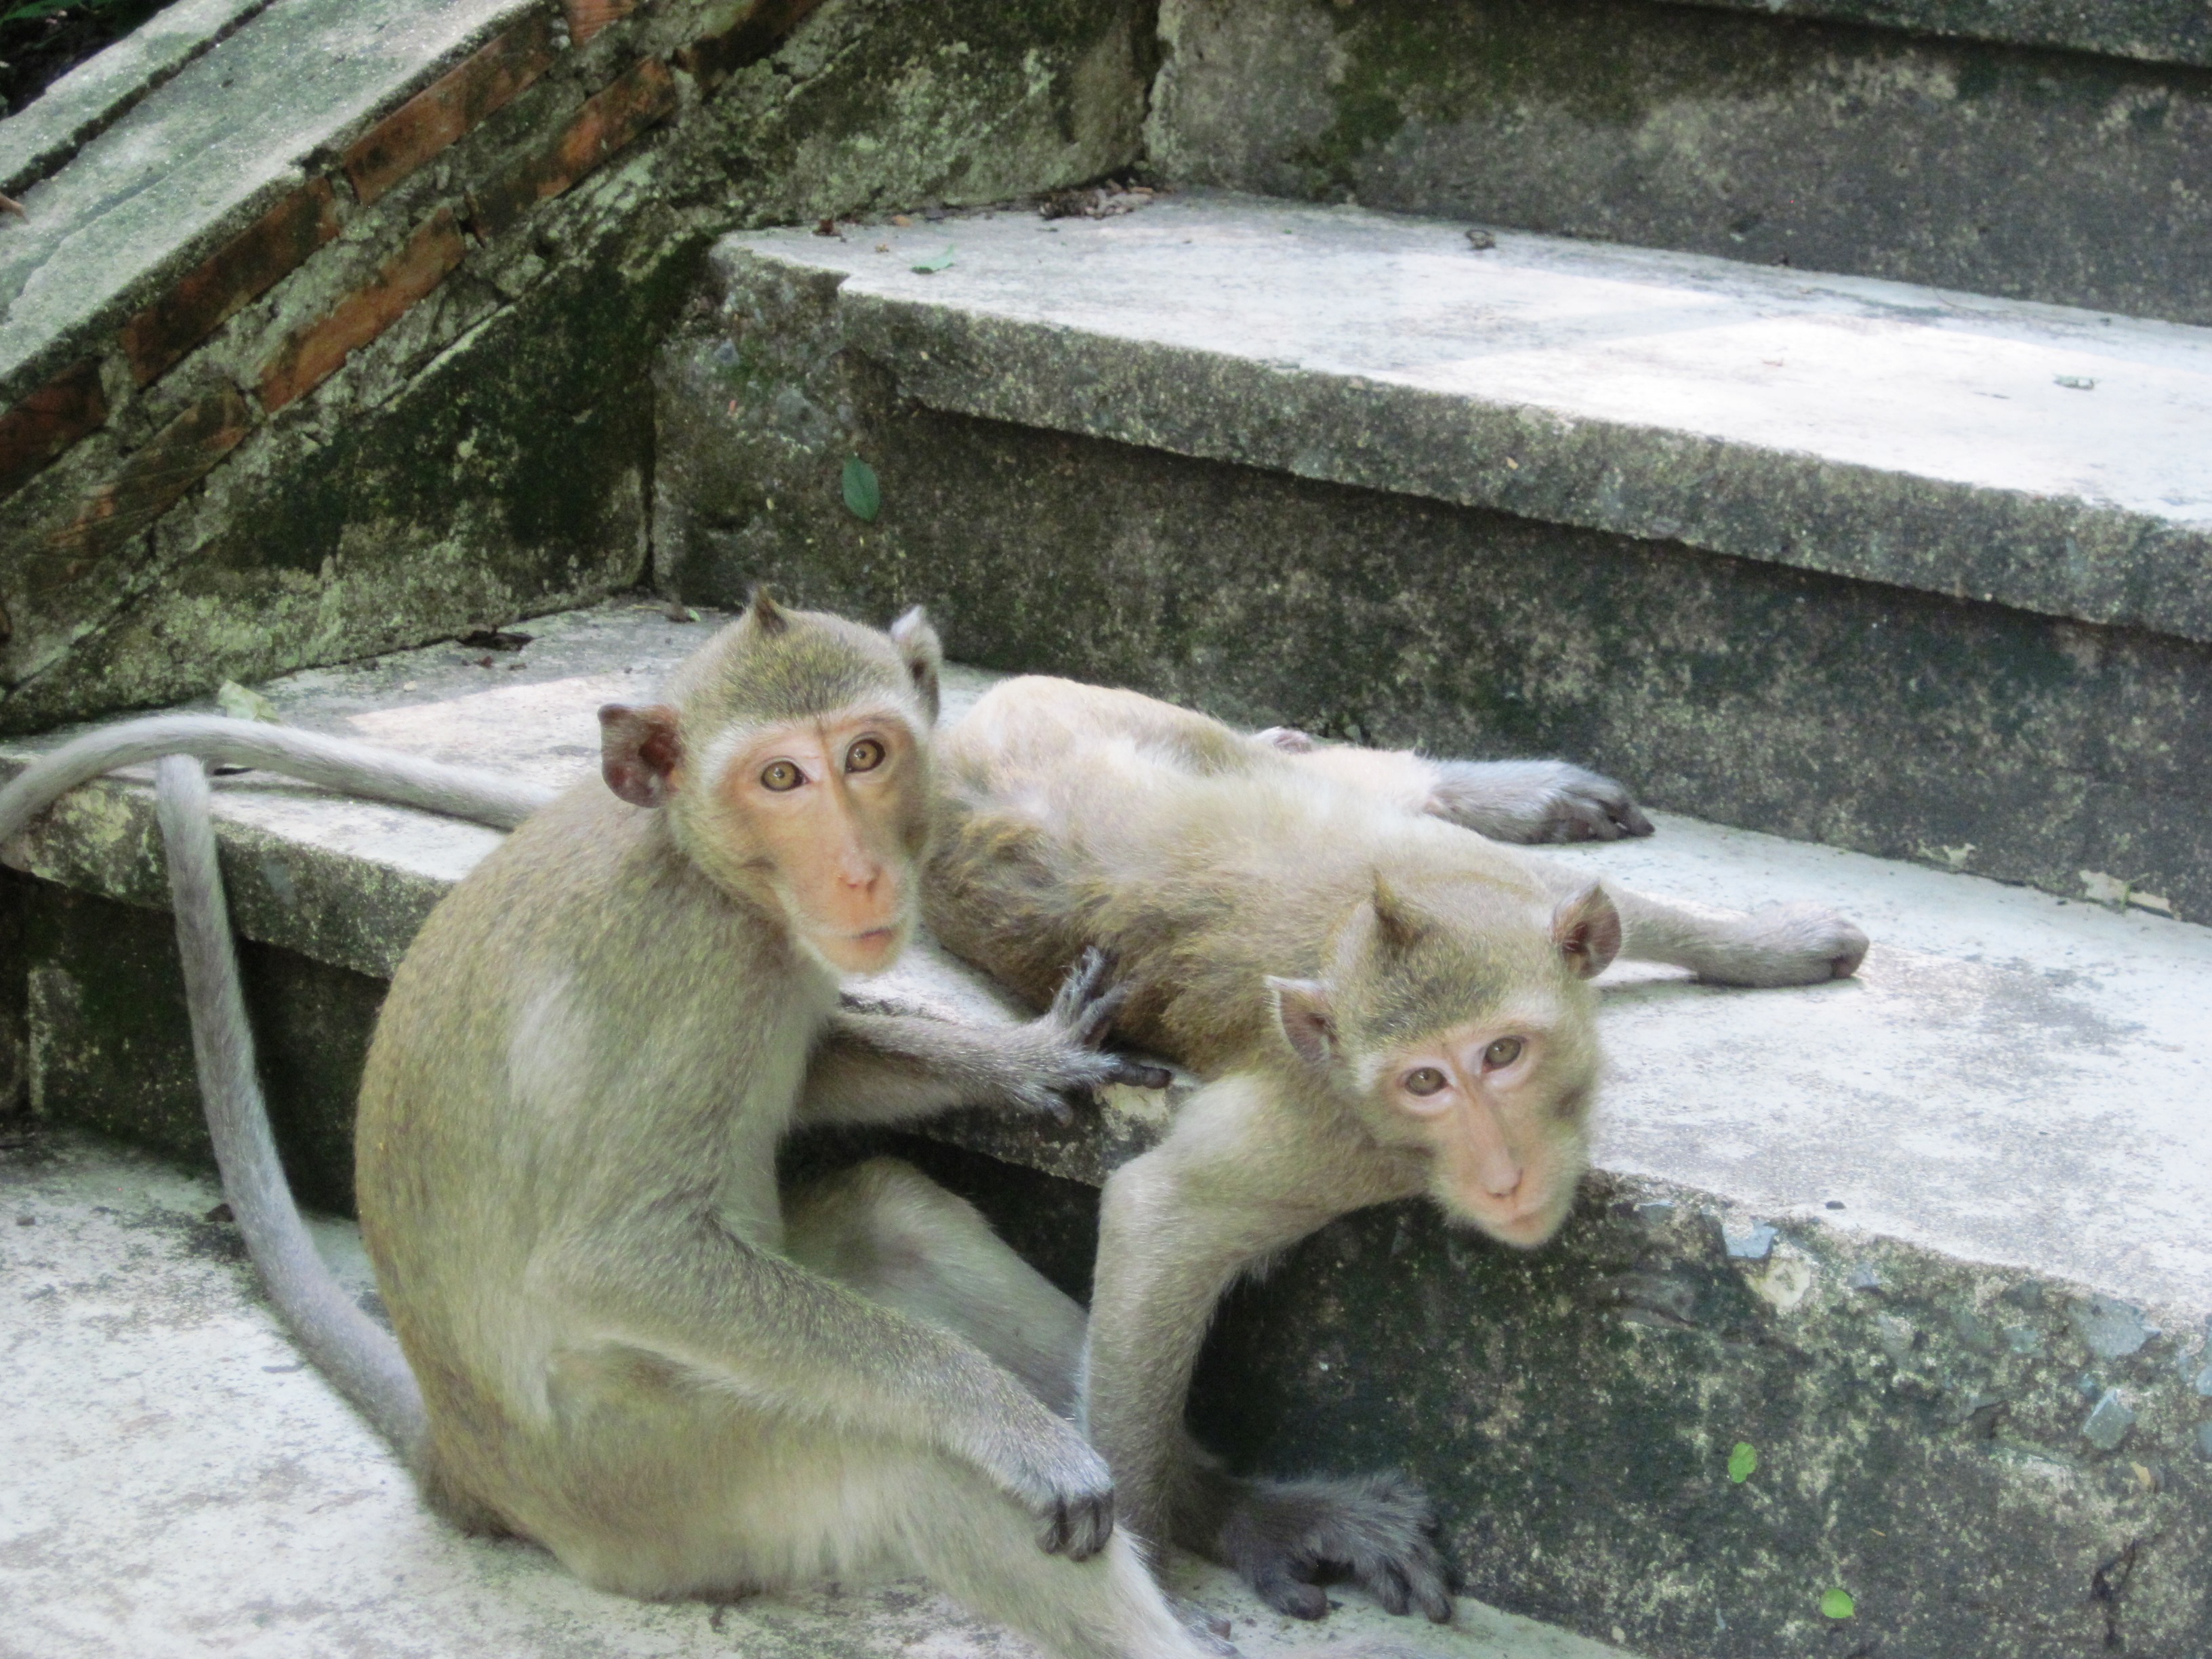 Temple Cynomolgus monkeys observing humans